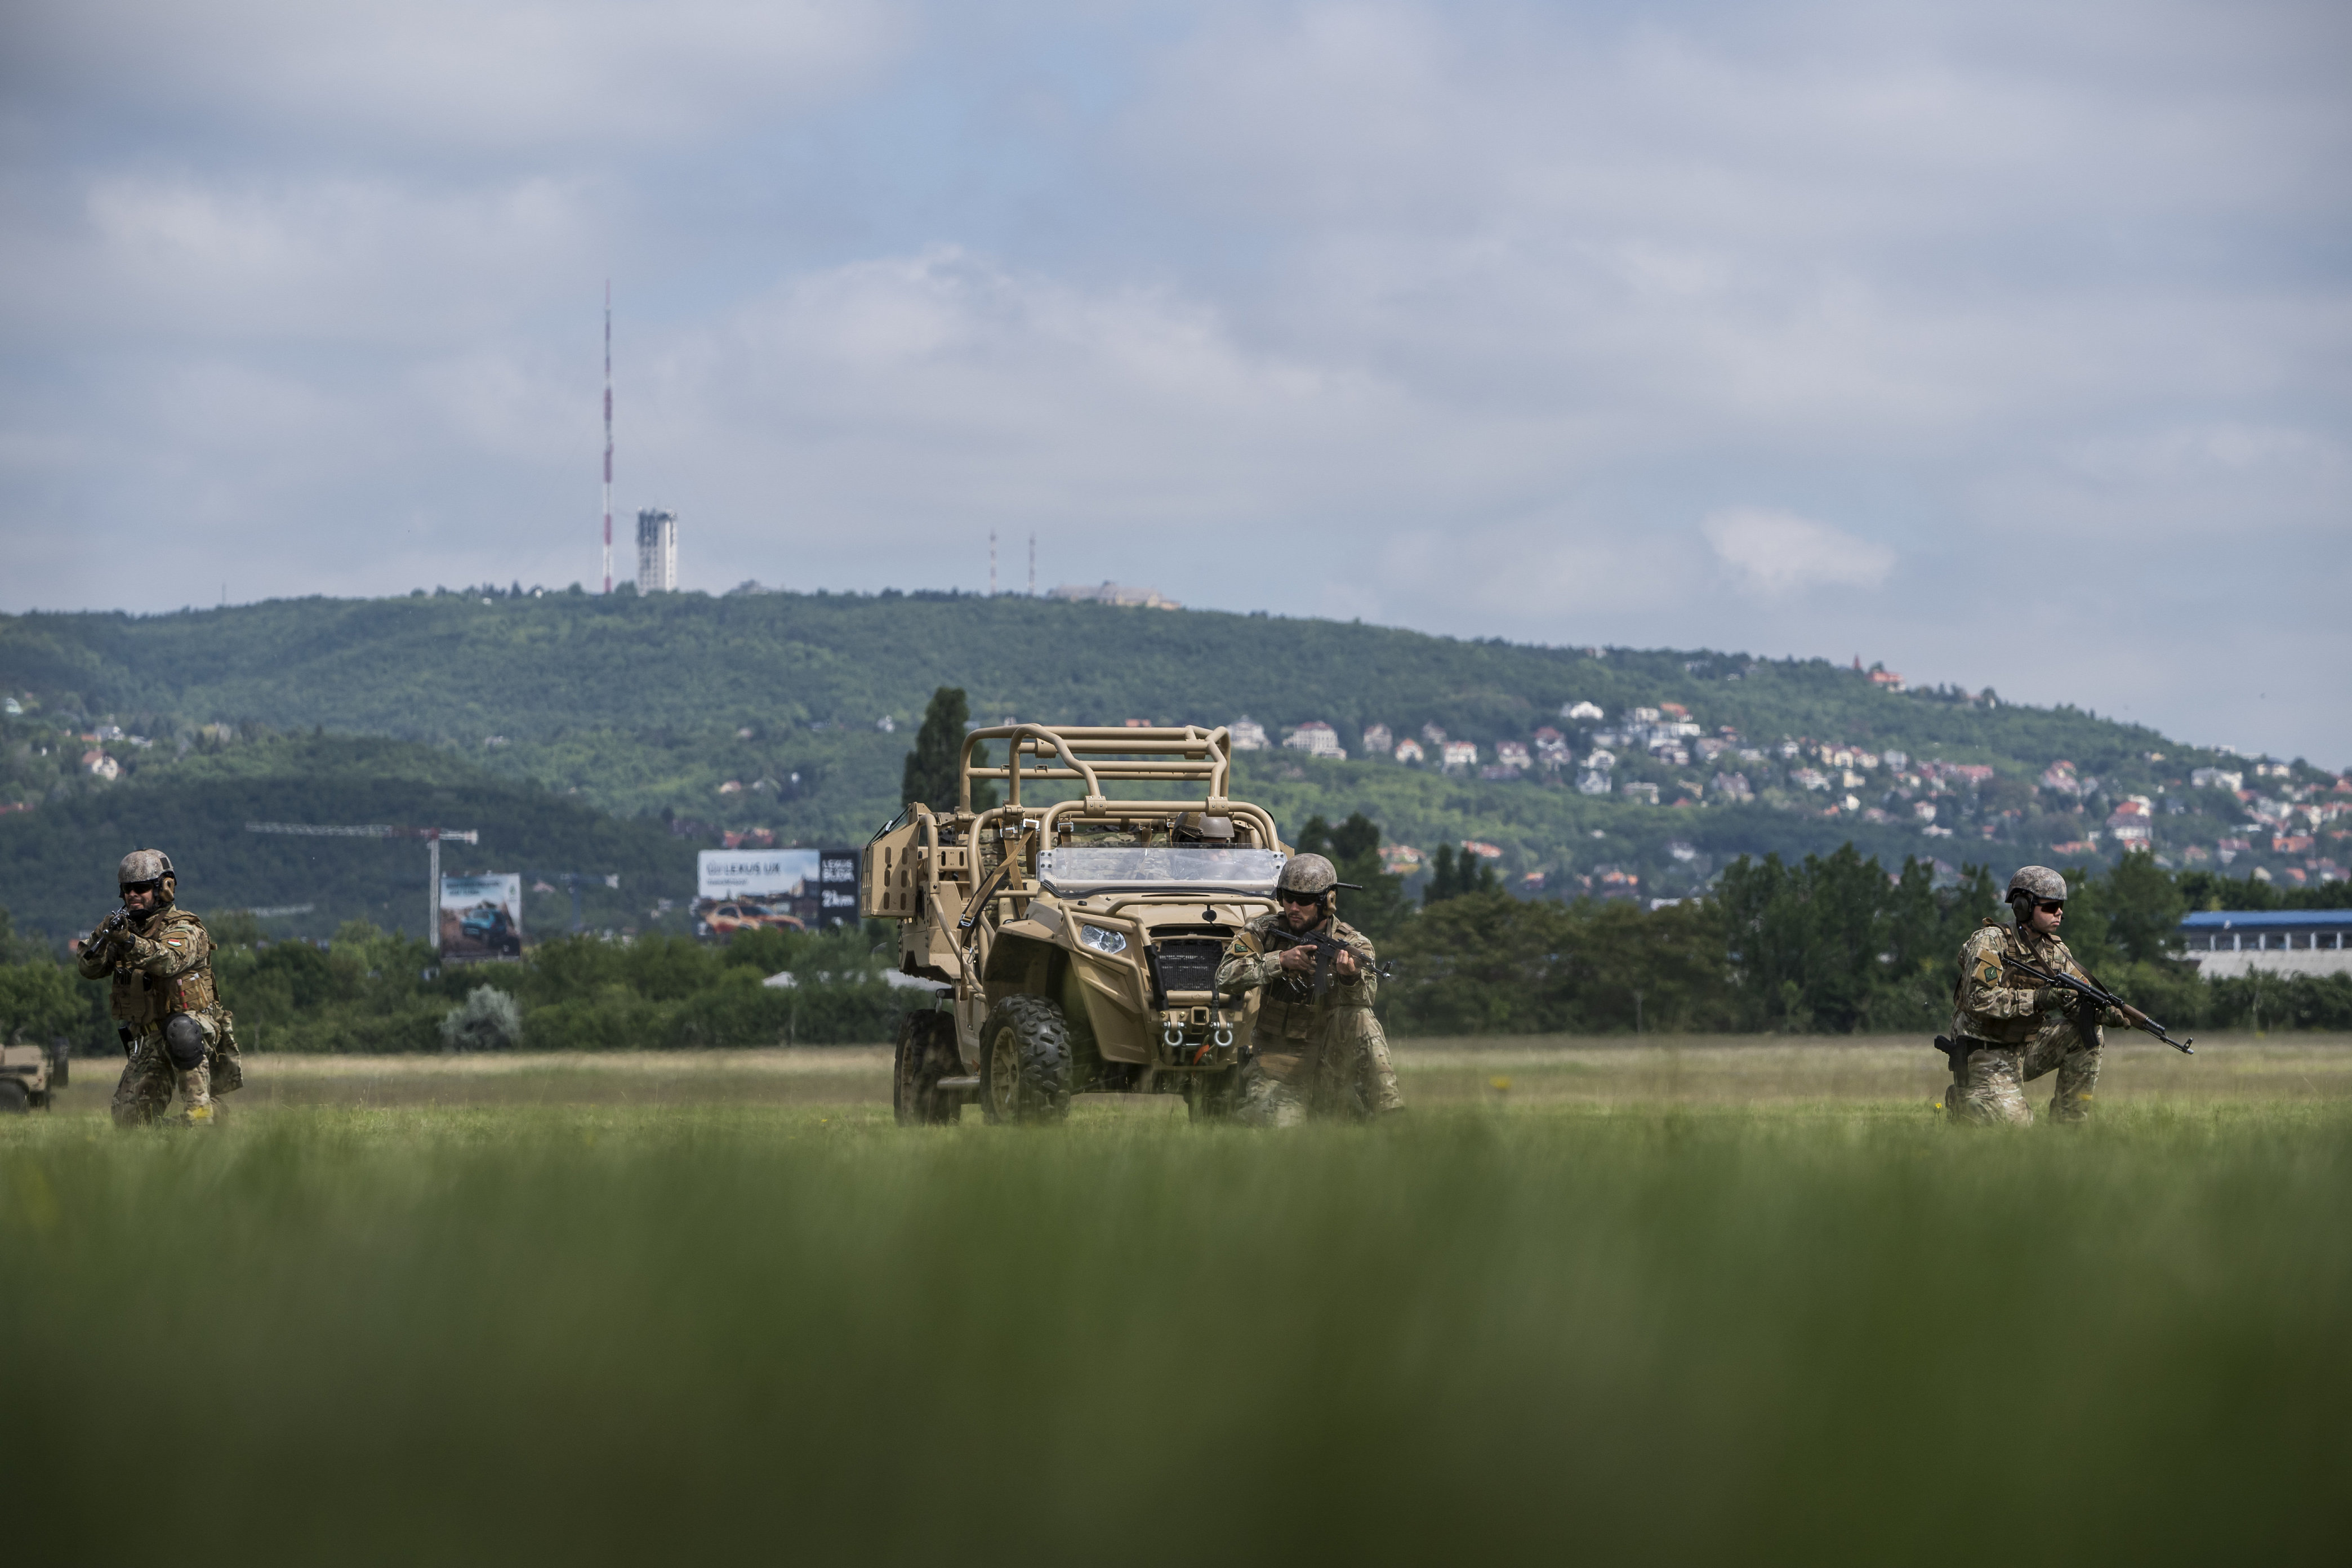 हंगरी अंतरराष्ट्रीय सैन्य अभियानों में अपनी भूमिका बढ़ाने के लिए तैयार है